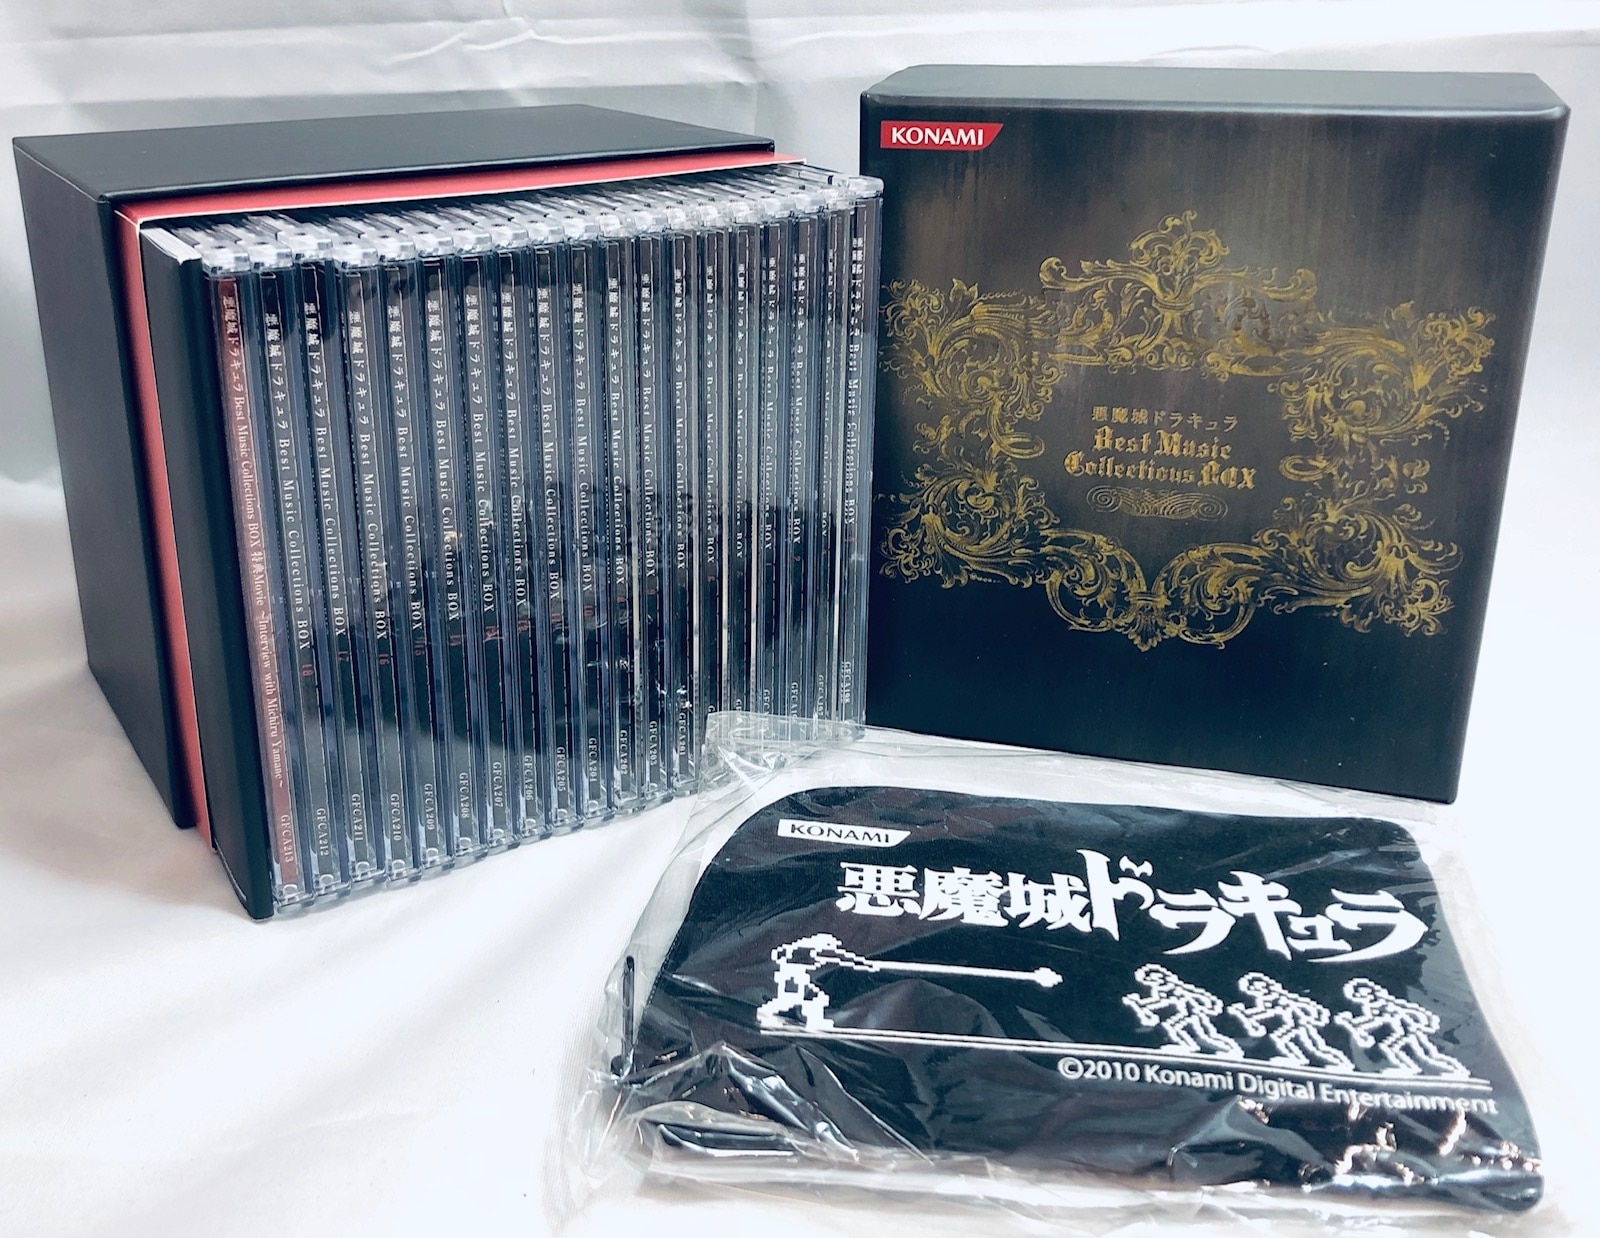 悪魔城ドラキュラ」Best Music Collections BOX - アニメ